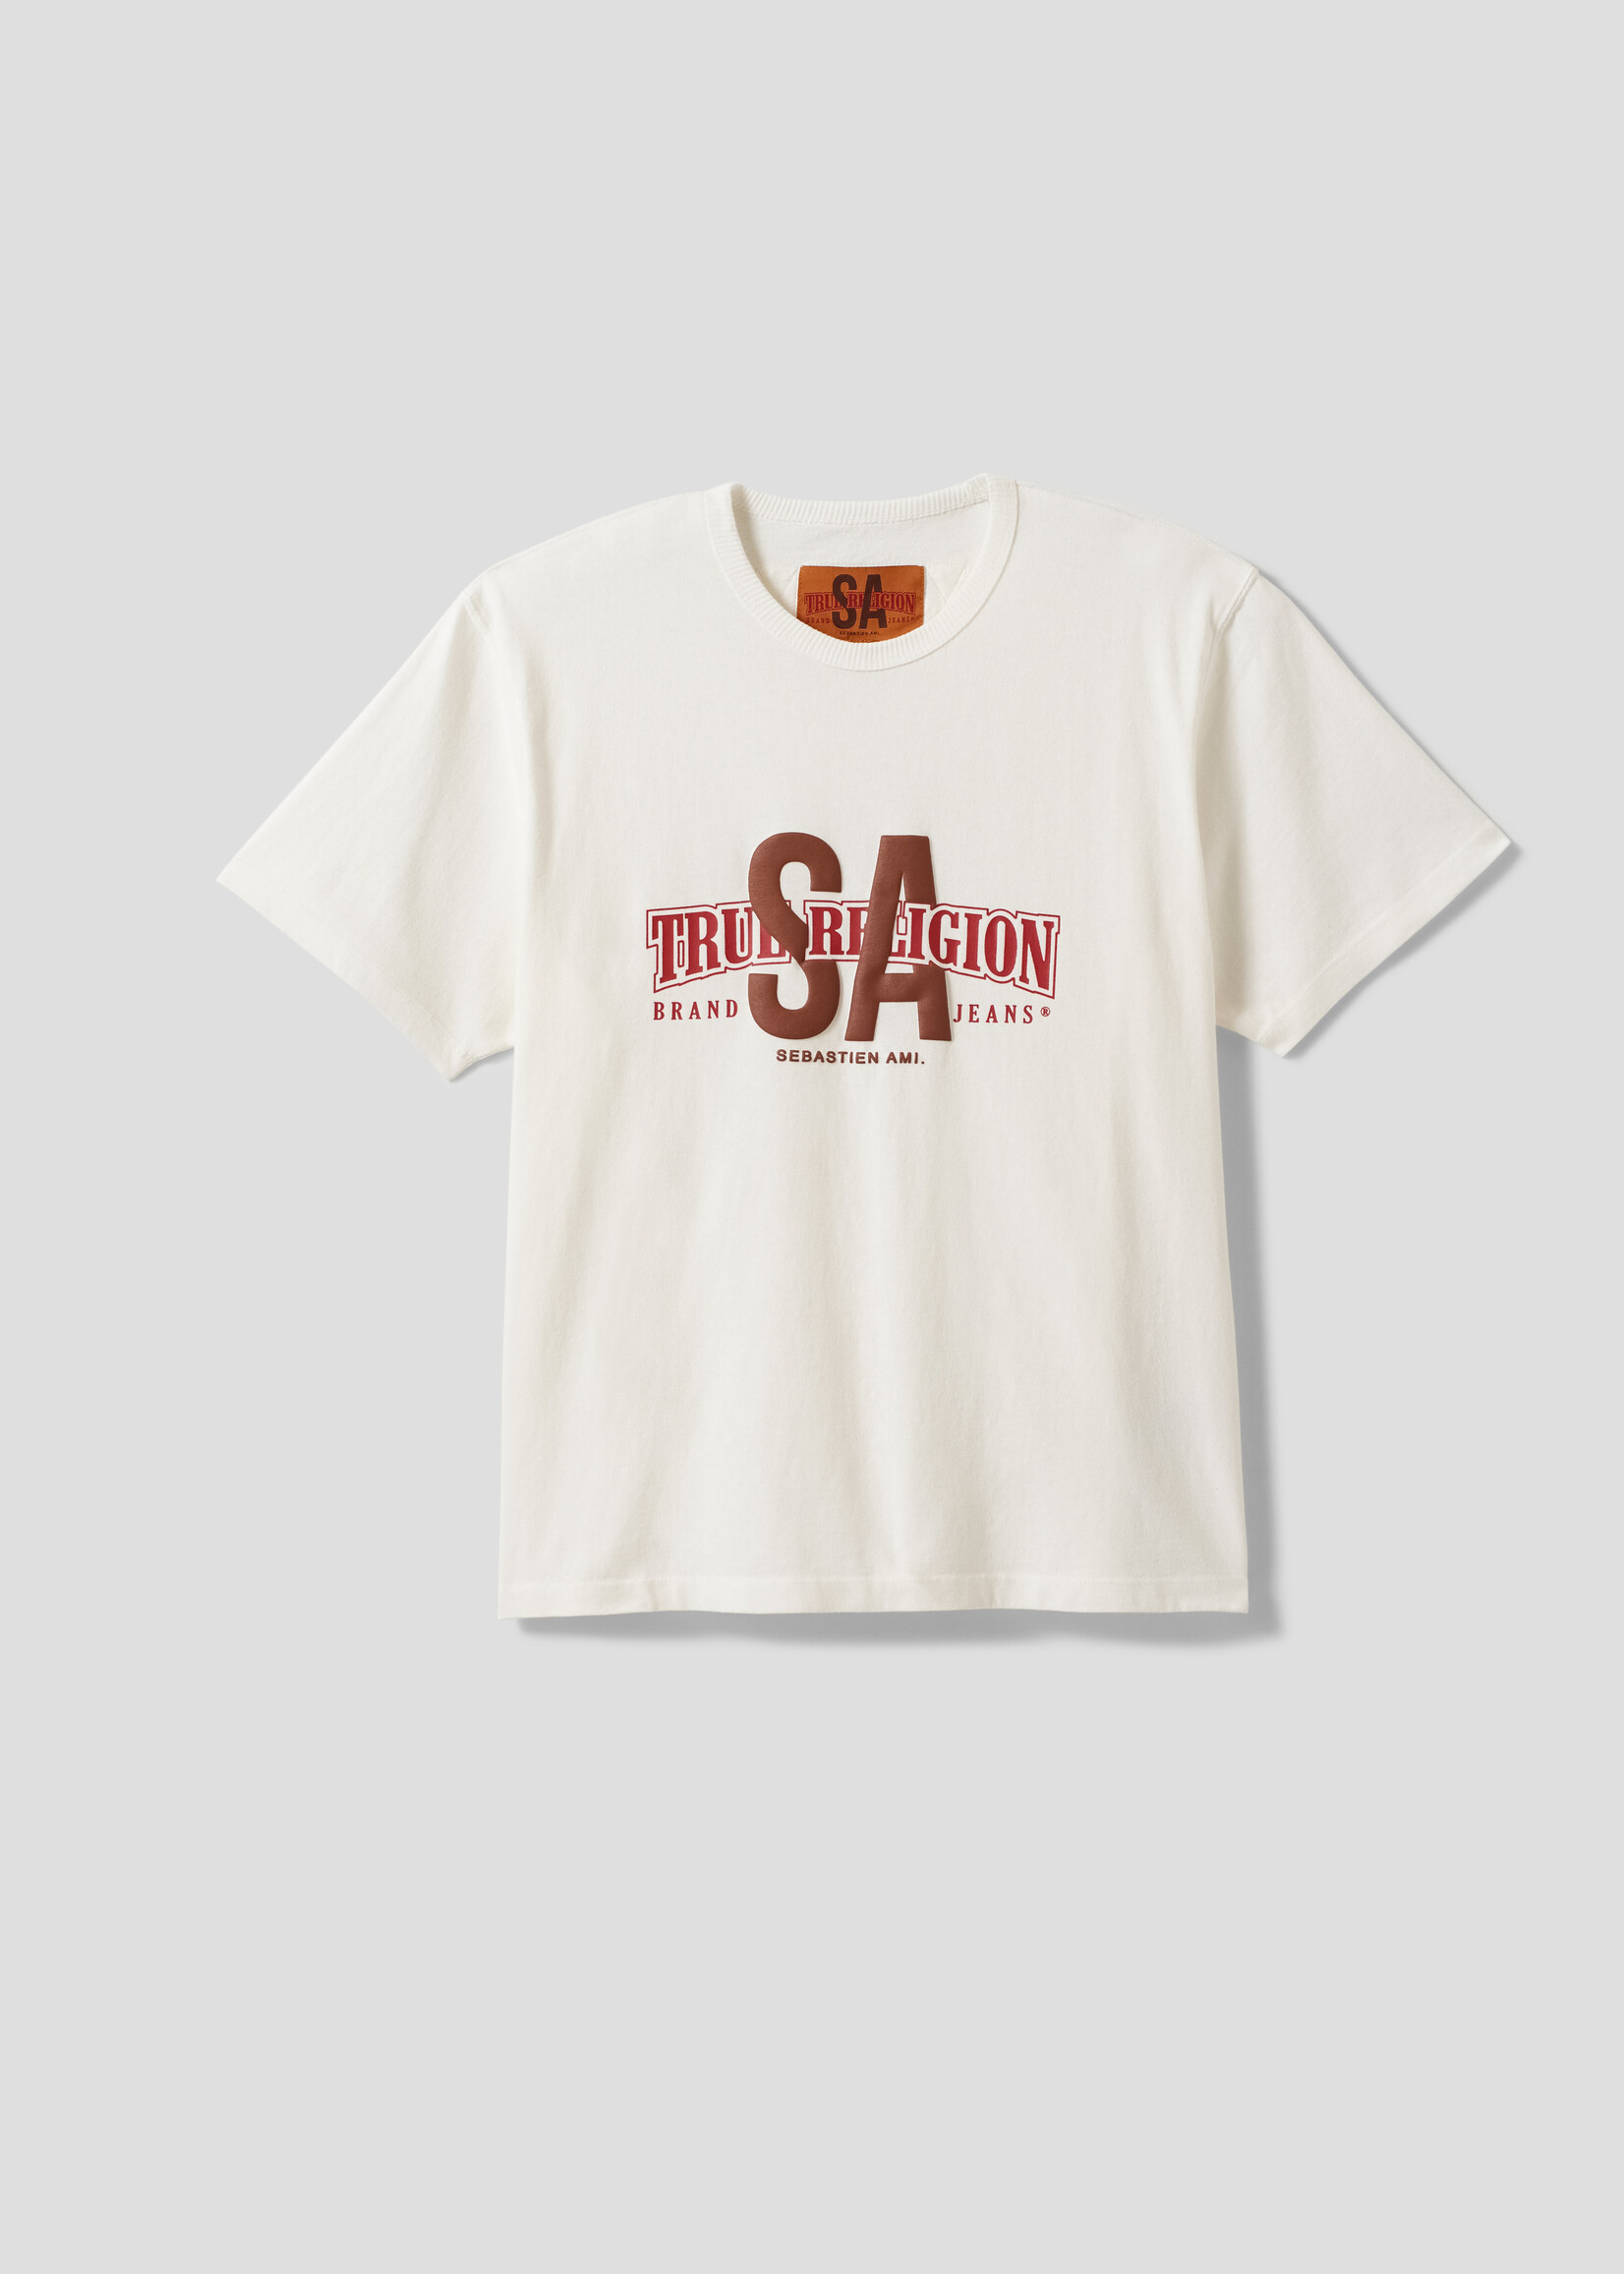 SEBASTIEN AMI SA X TR Collab Logo T-shirt in Off White